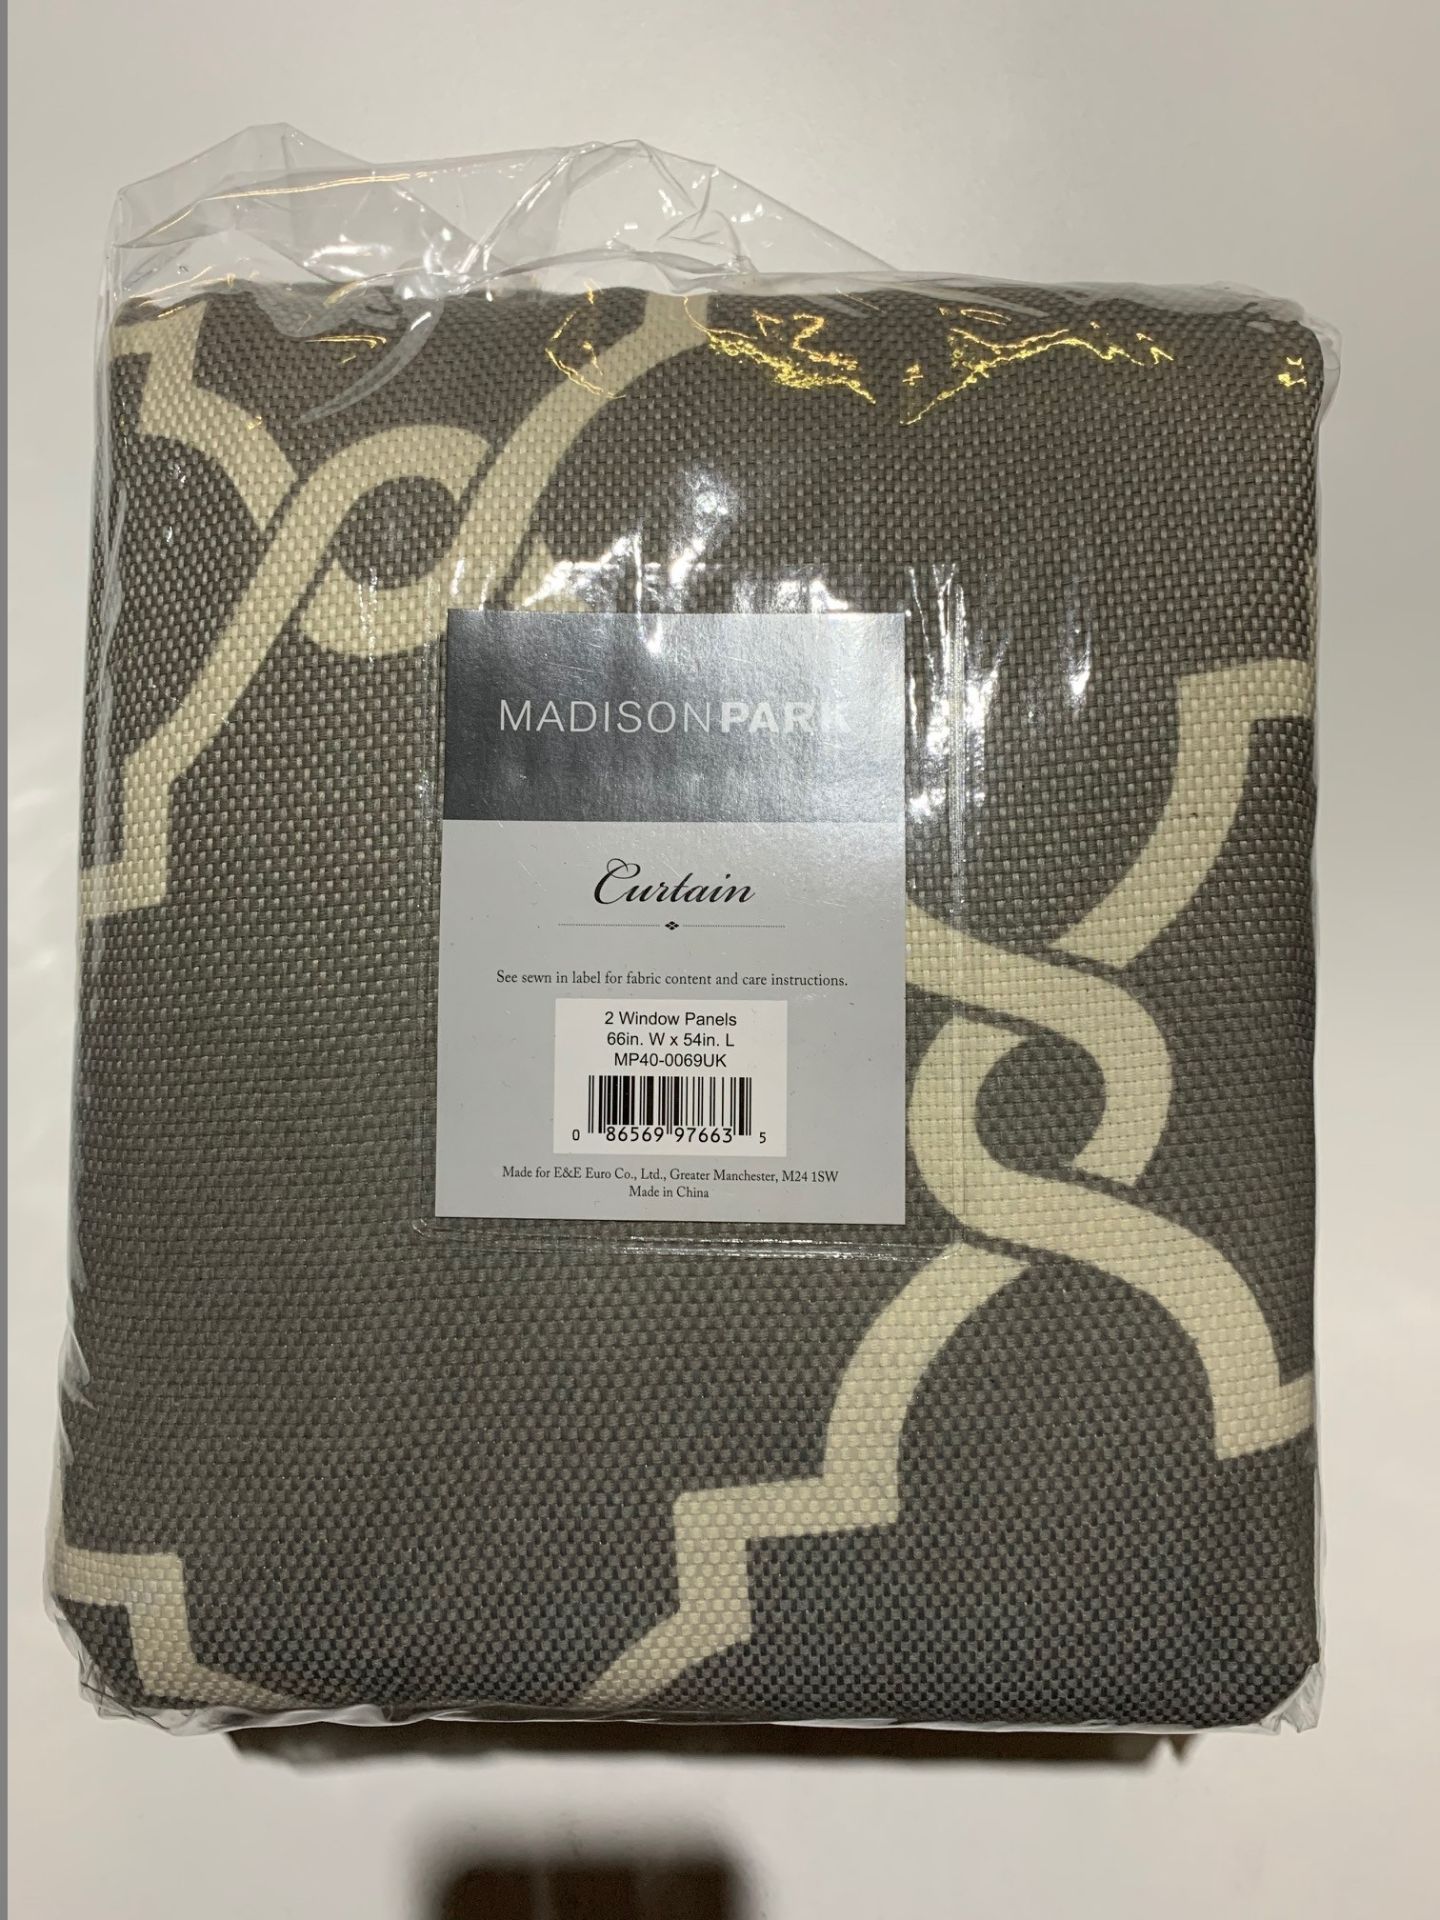 1 x Set of Madison Park Saratoga Grey Curtains 66x54"/168x137cm - Product Code MP40-0069UK (Brand - Image 2 of 2